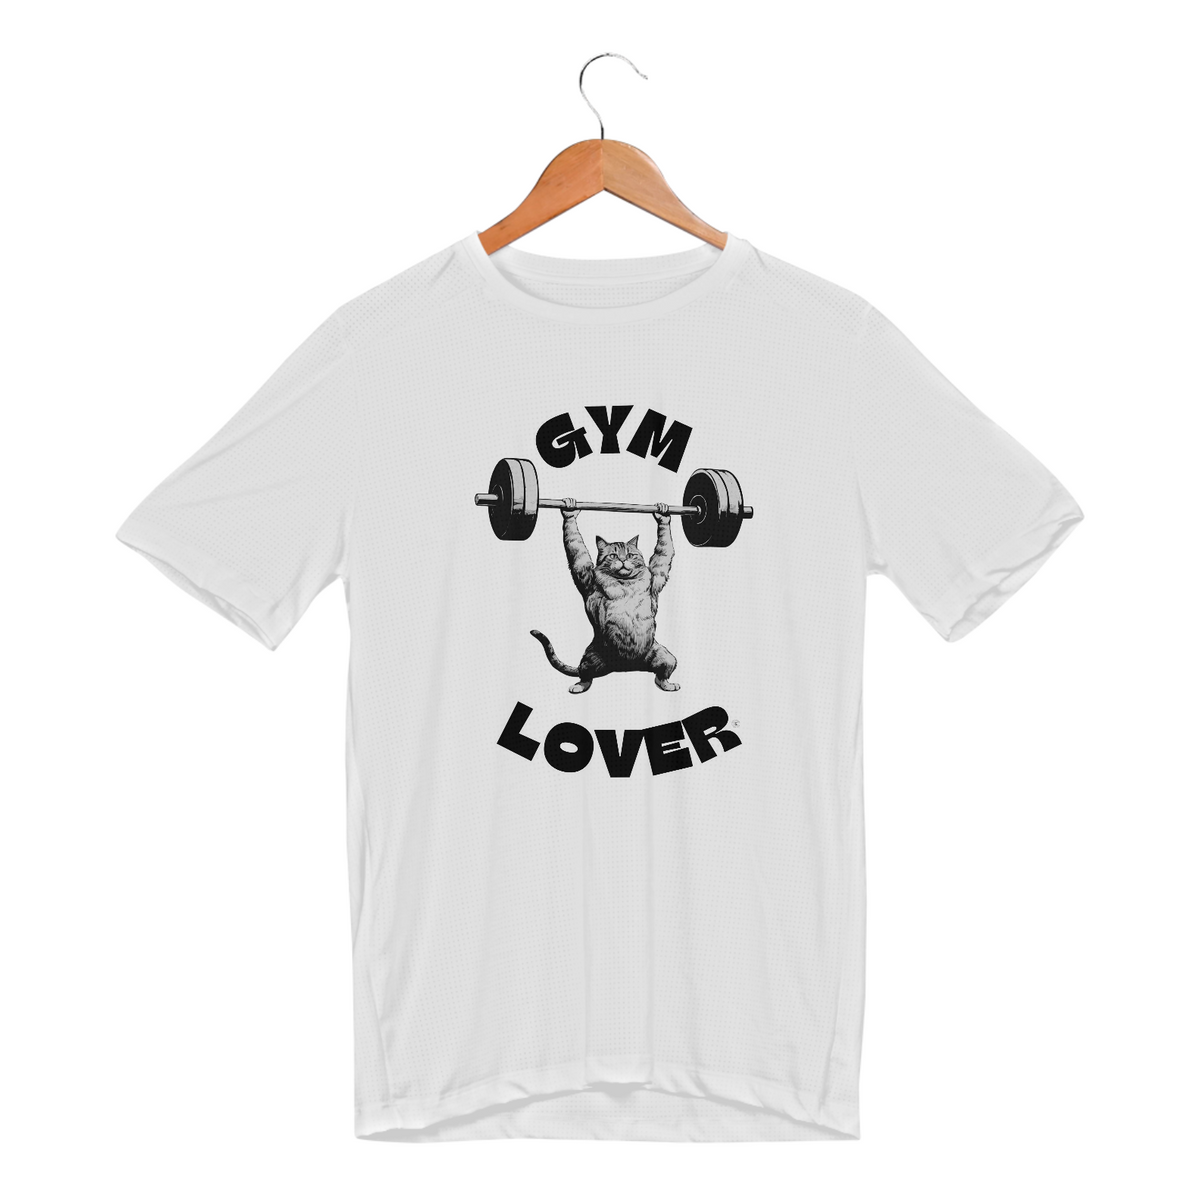 Nome do produto: Camiseta Sport Dry UV - Gym Lover